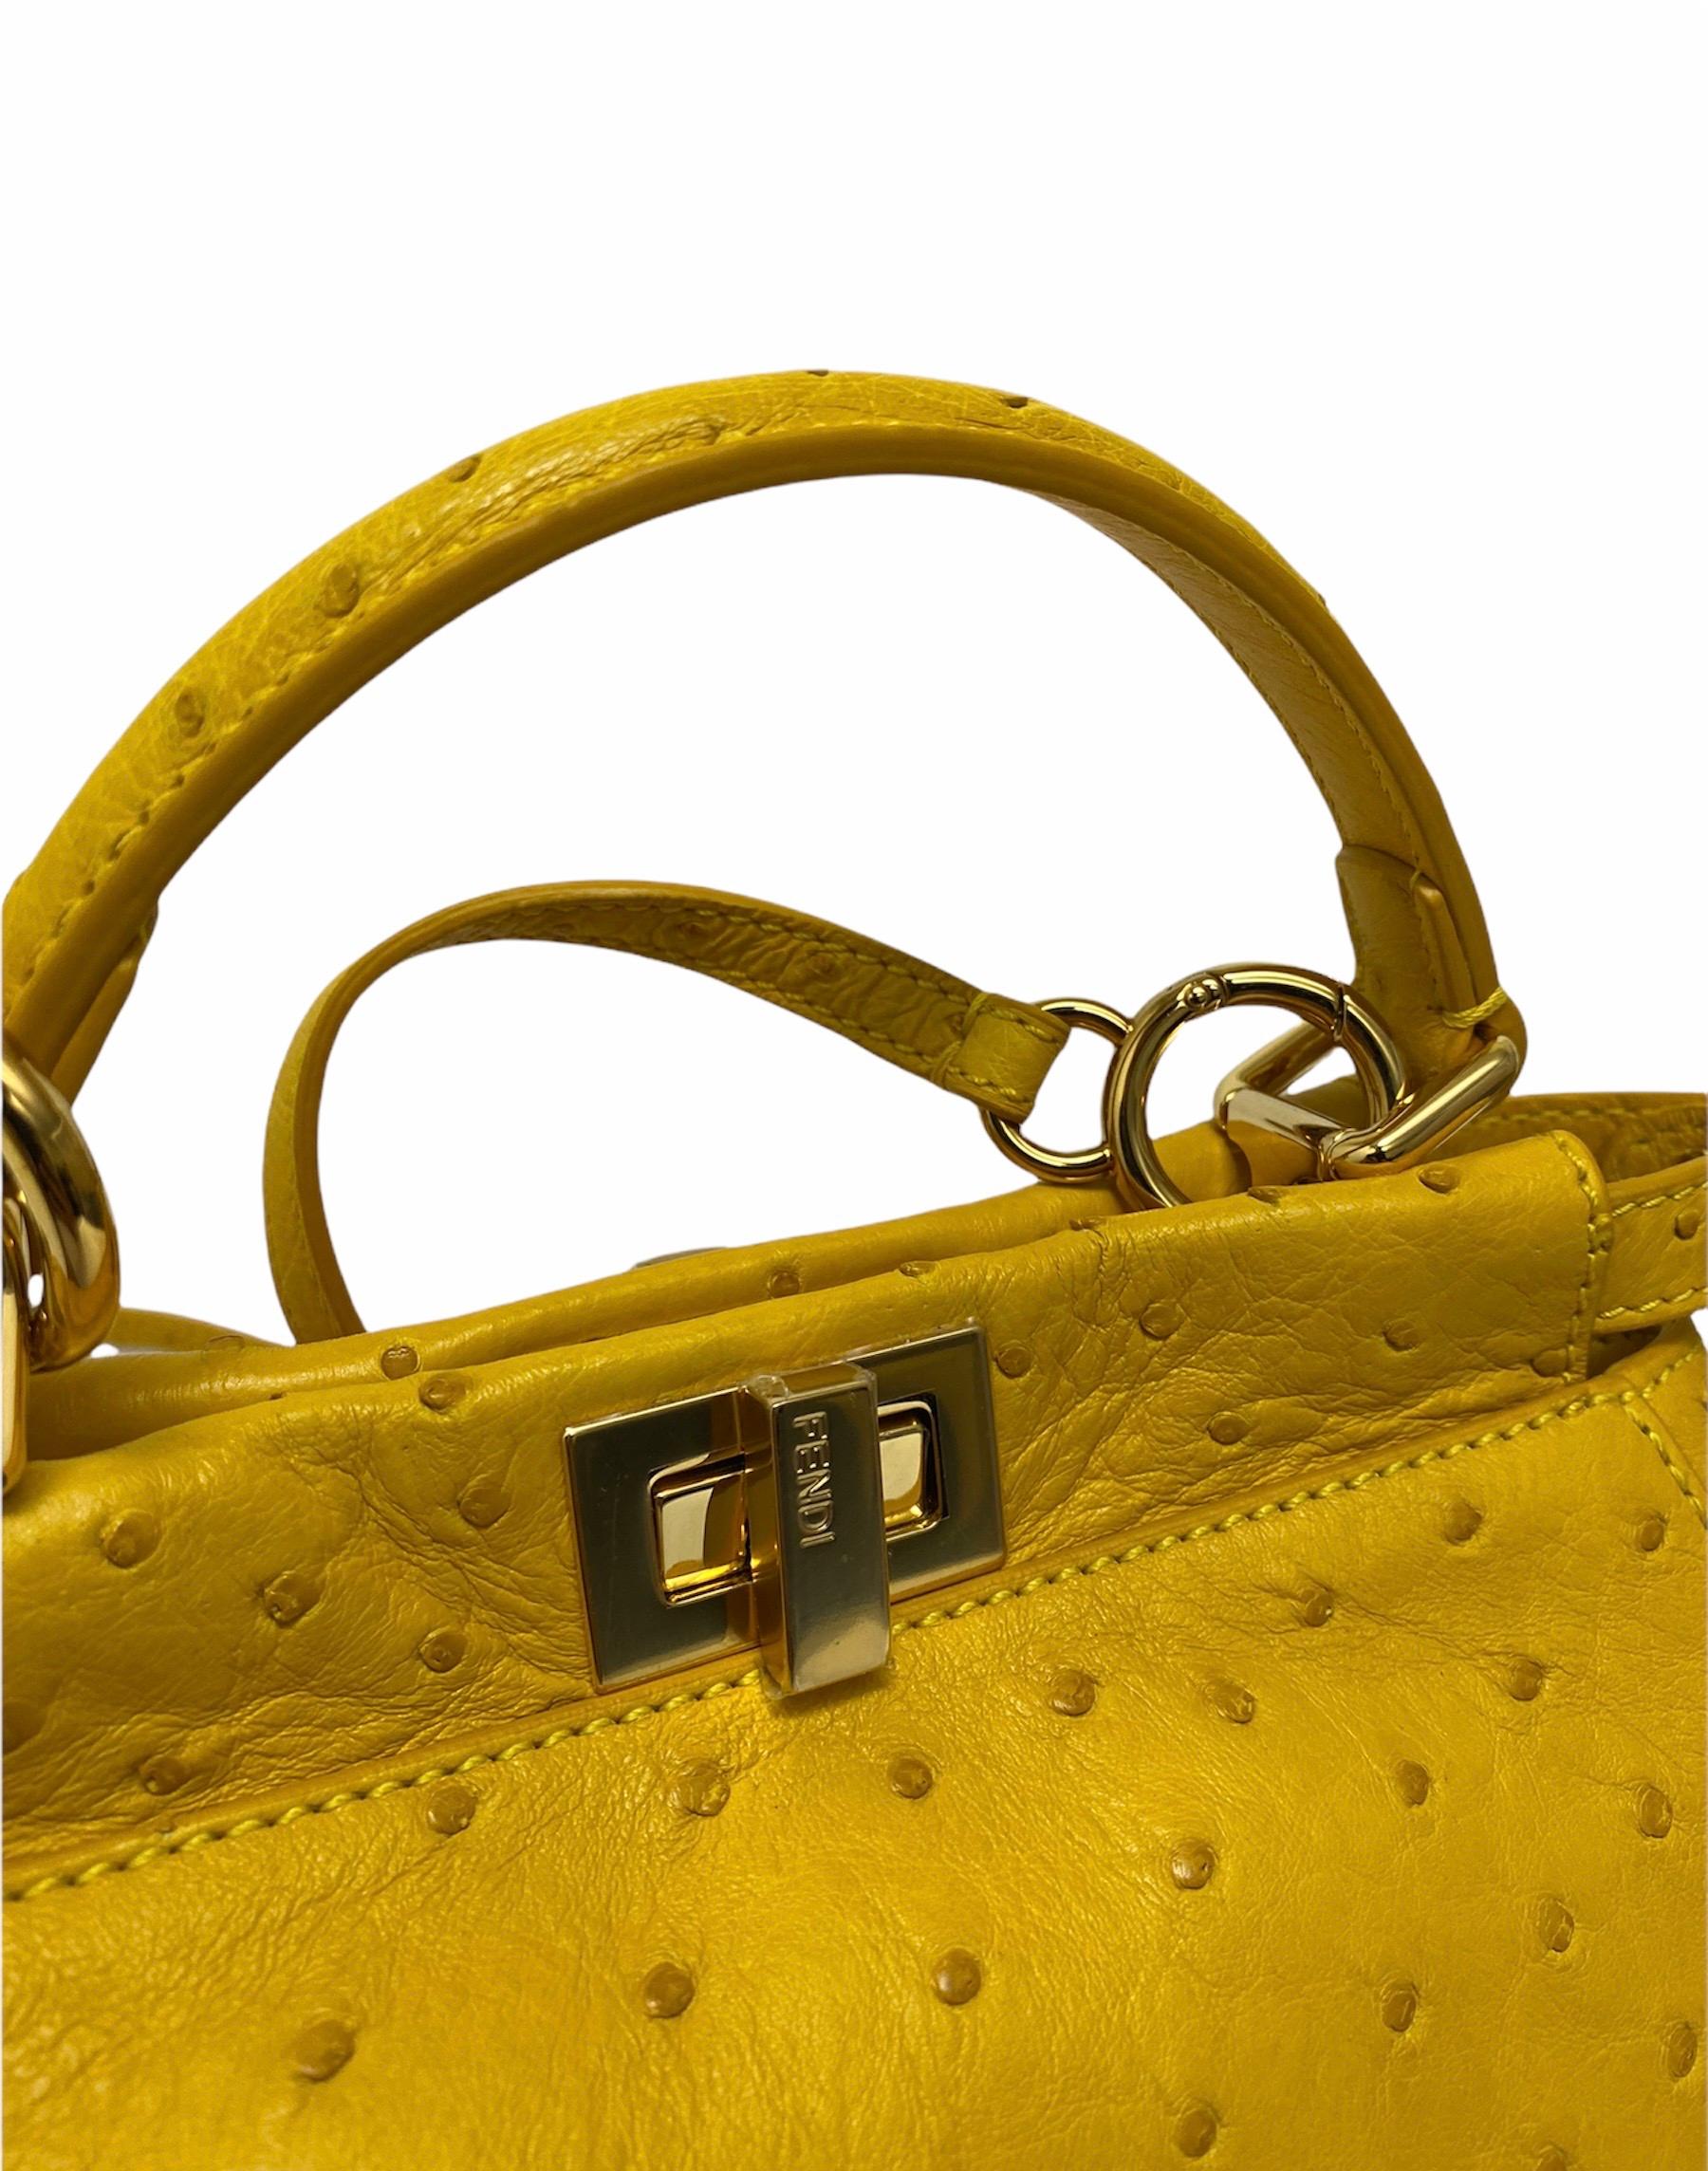 Fendi Yellow Leather Peekaboo Bag 2